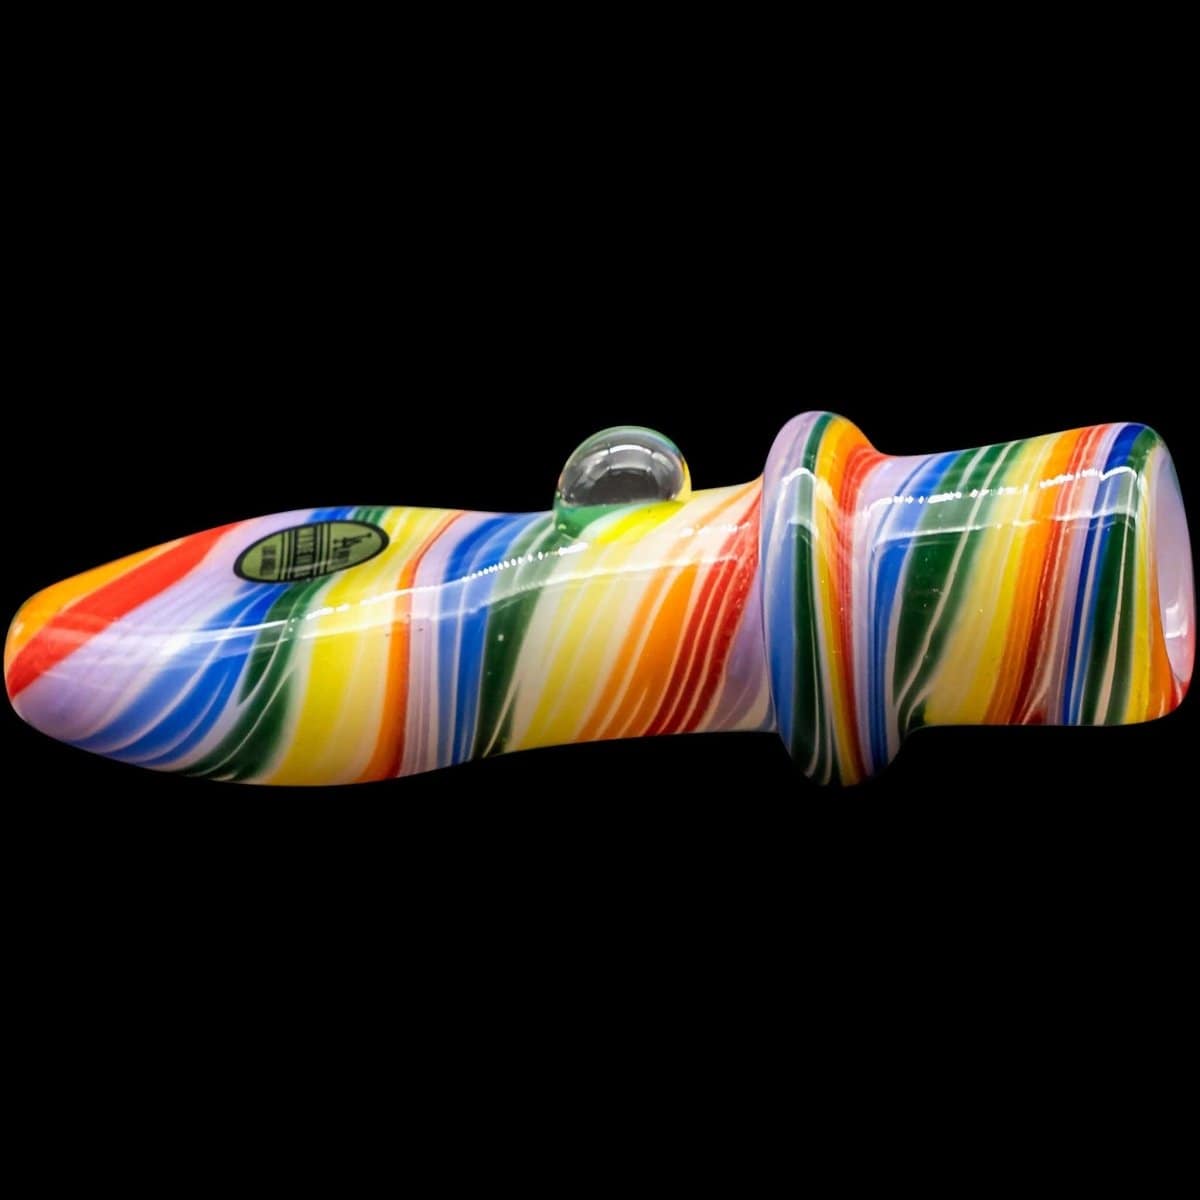 LA Pipes Hand Pipe "Rainbow Tornado" Chillum Pipe